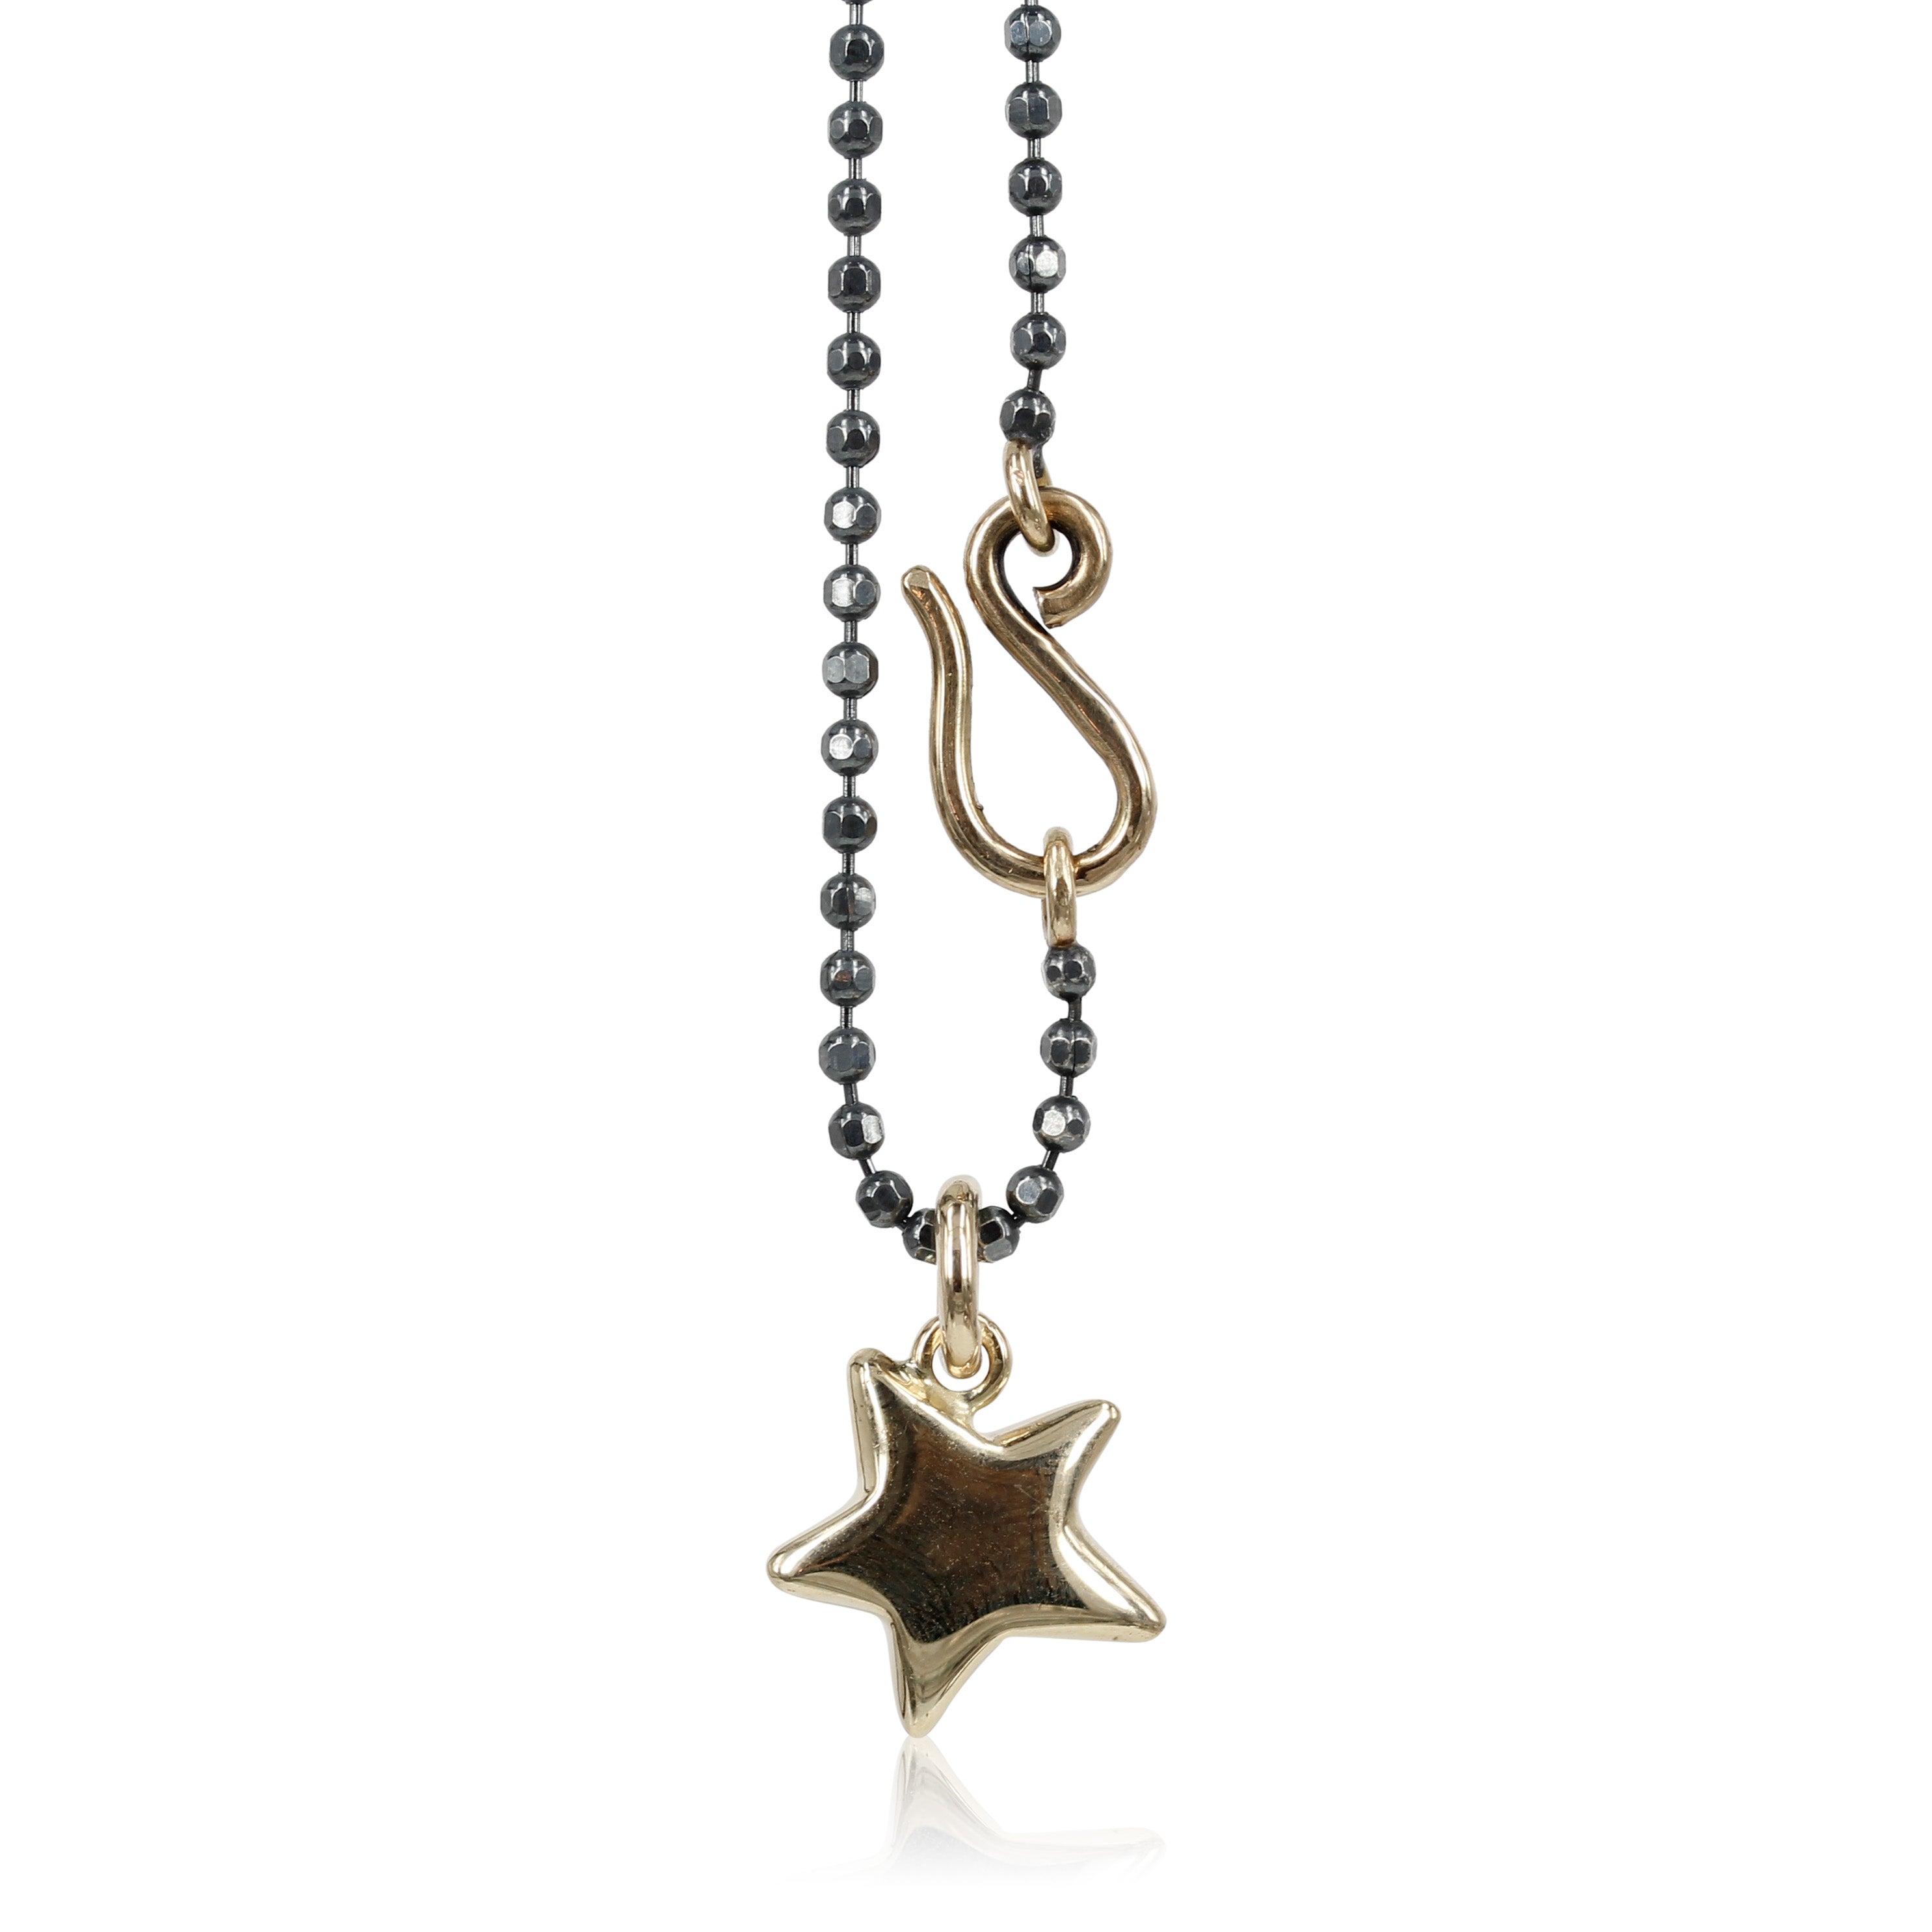 02086. Believe -  14 kt. Guld vedhæng med din helt egen Lucky star  Smuk stjerne der kan bæres alene eller sammen med en skøn perle, eller evt. et fint hjerte, mulighederne er utallige med denne skønne 14 kt guldhalskæde.